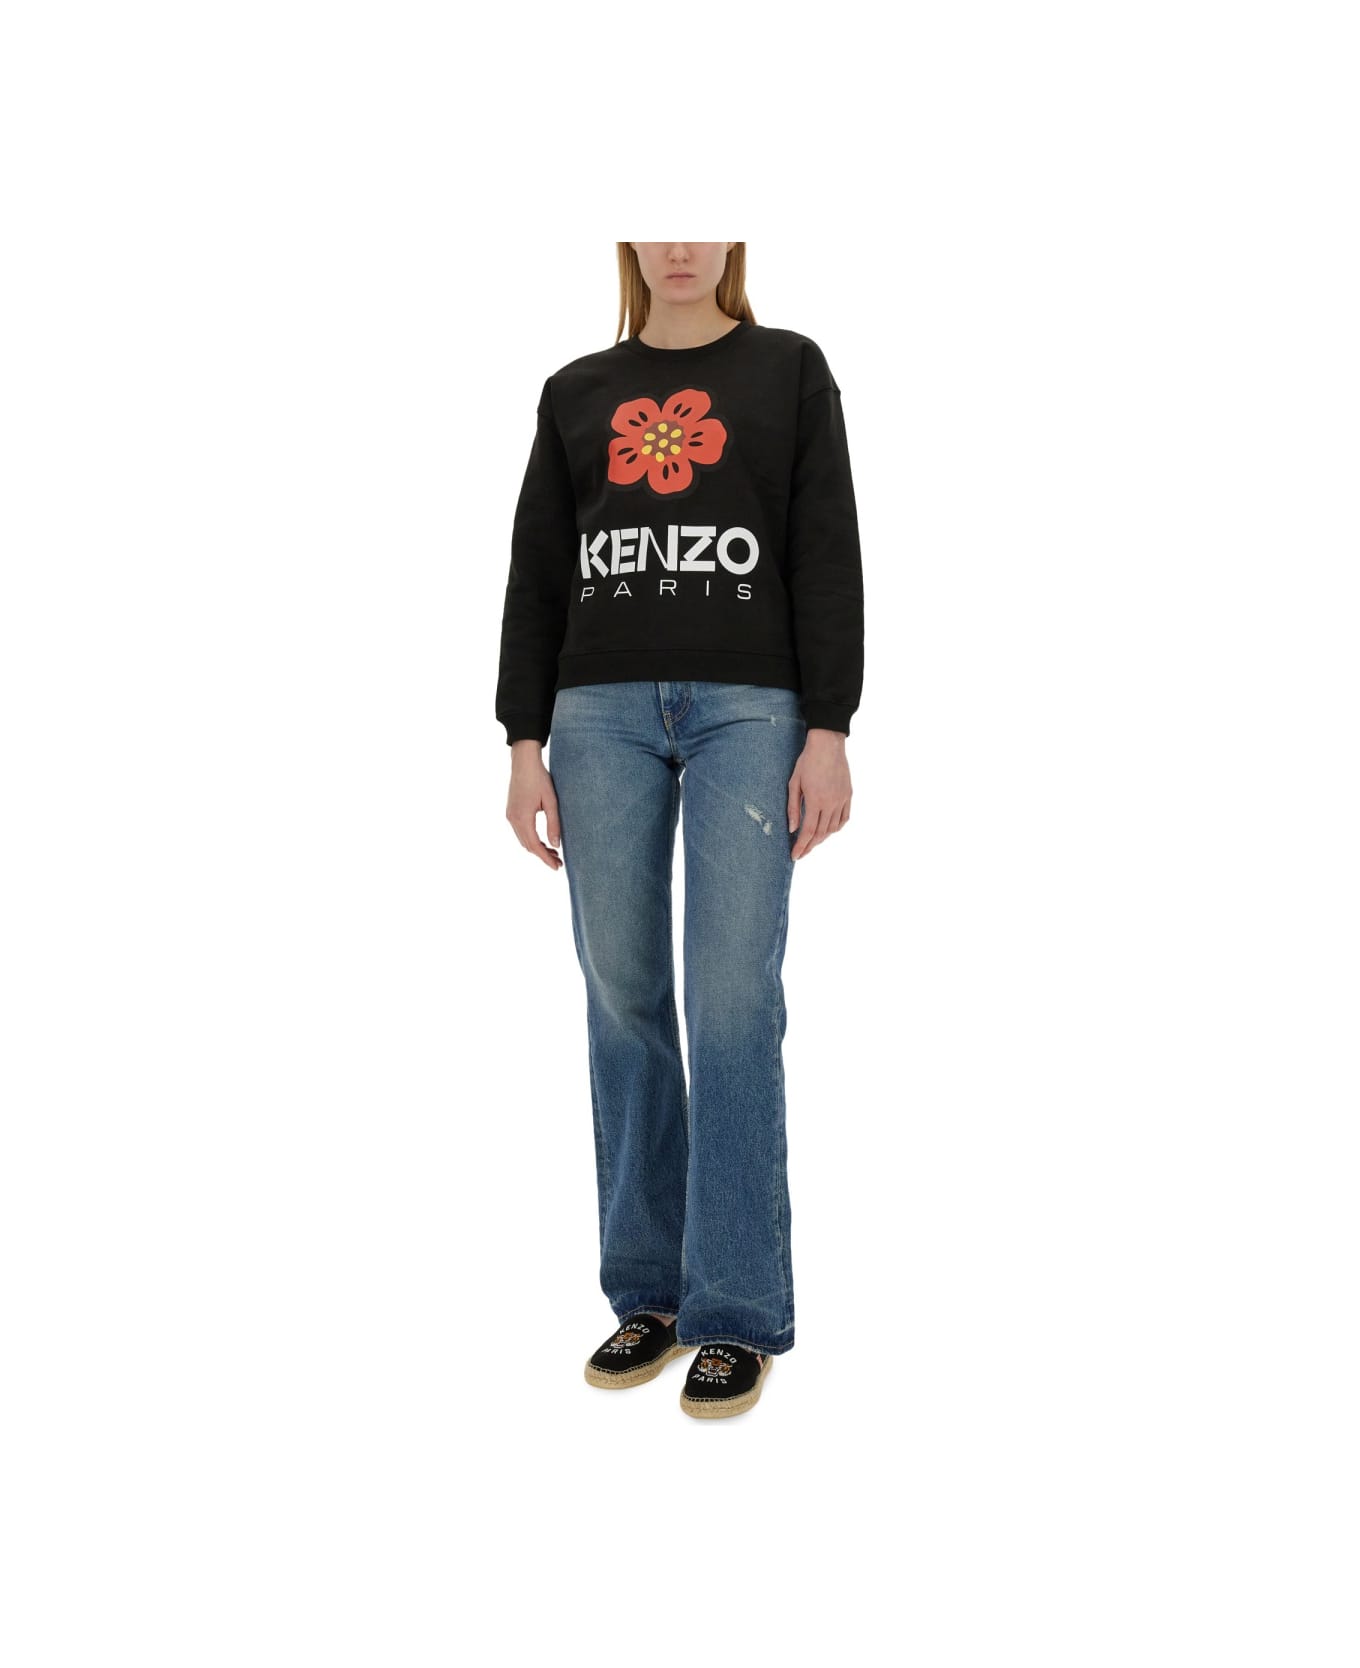 Kenzo 'boke Flower' Sweatshirt - BLACK